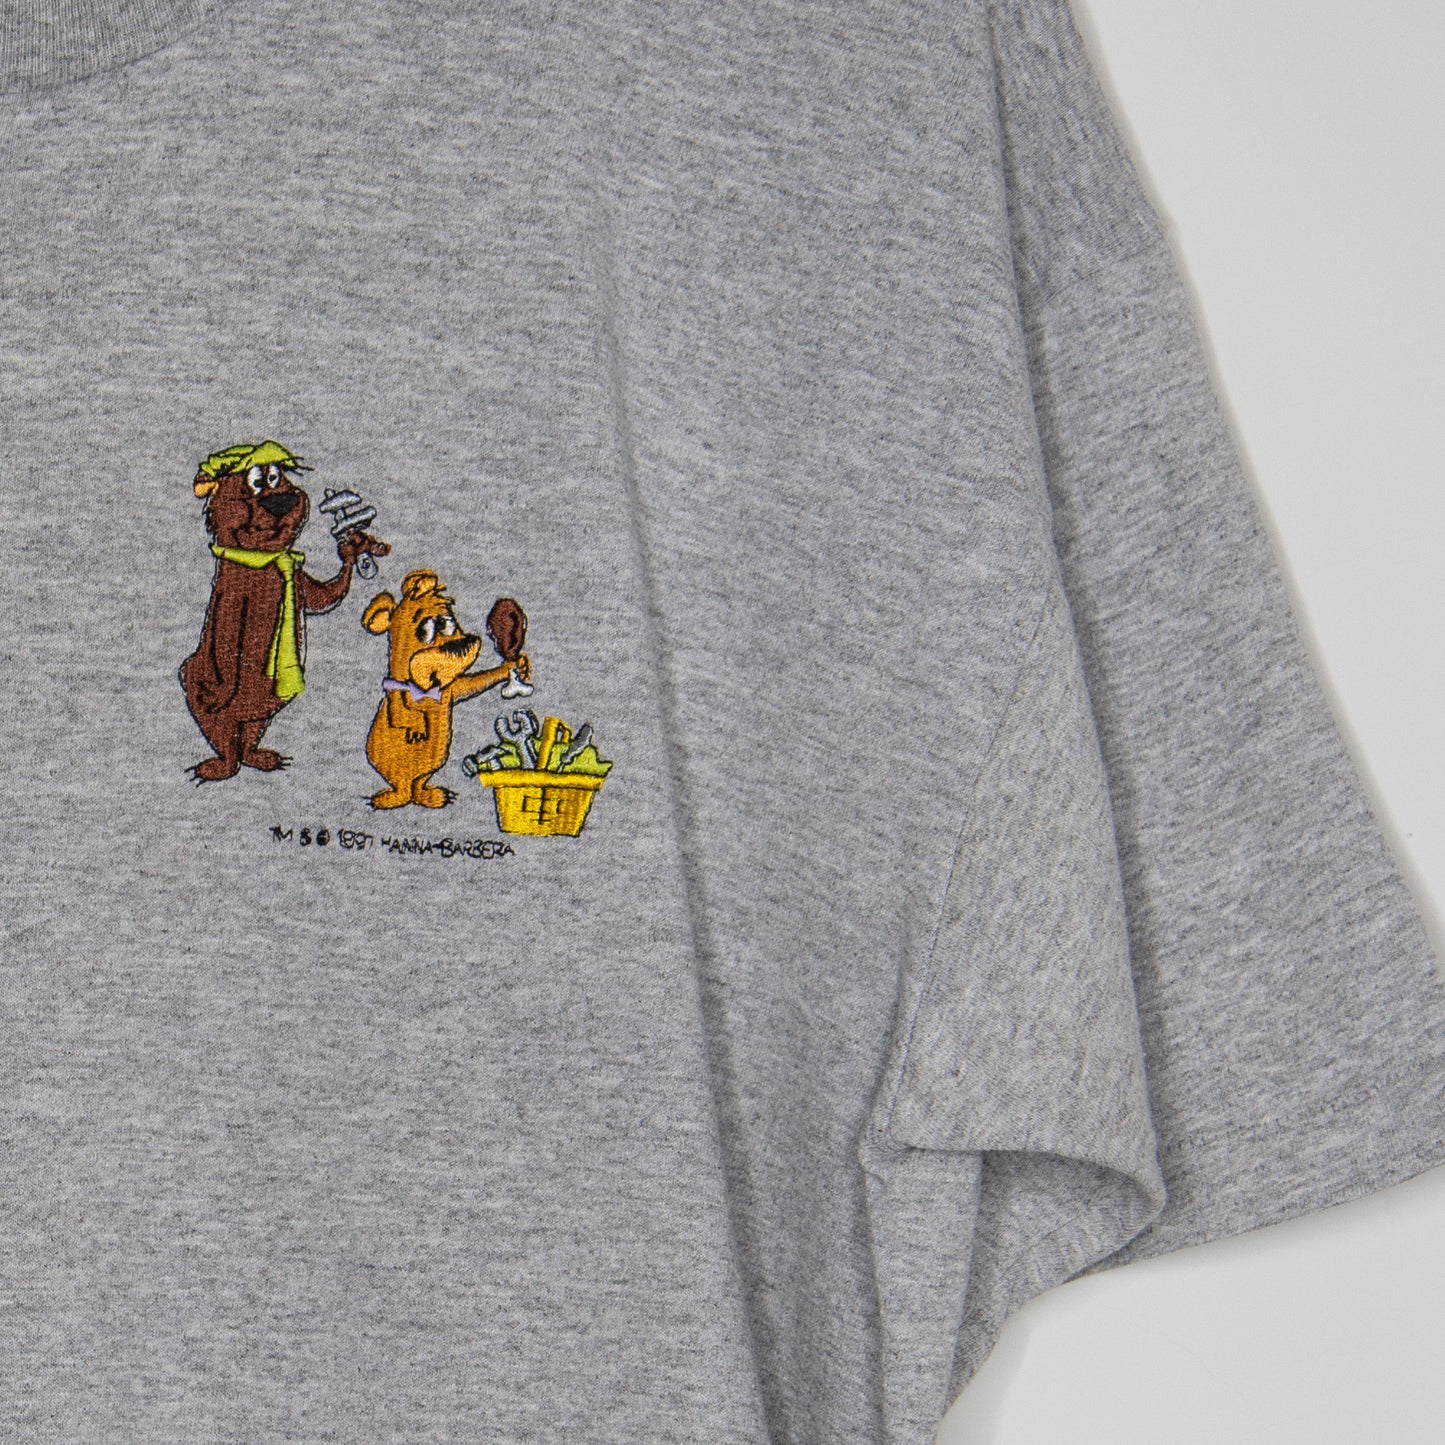 1997 Yogi Bear T-Shirt Large